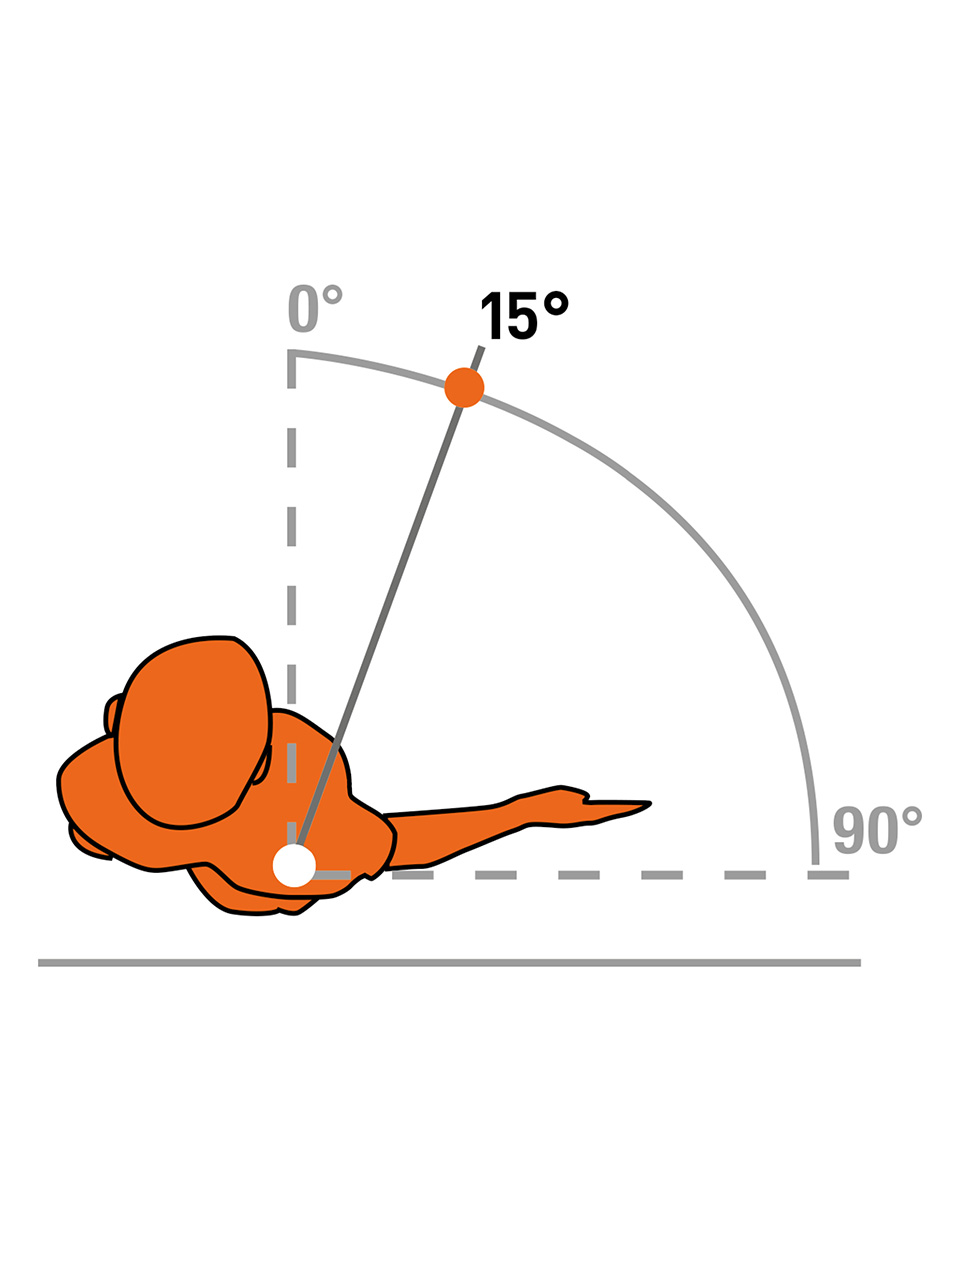 Extra-S 15° - Orteza odwodząca kończynę górną   pod kątem 15 °